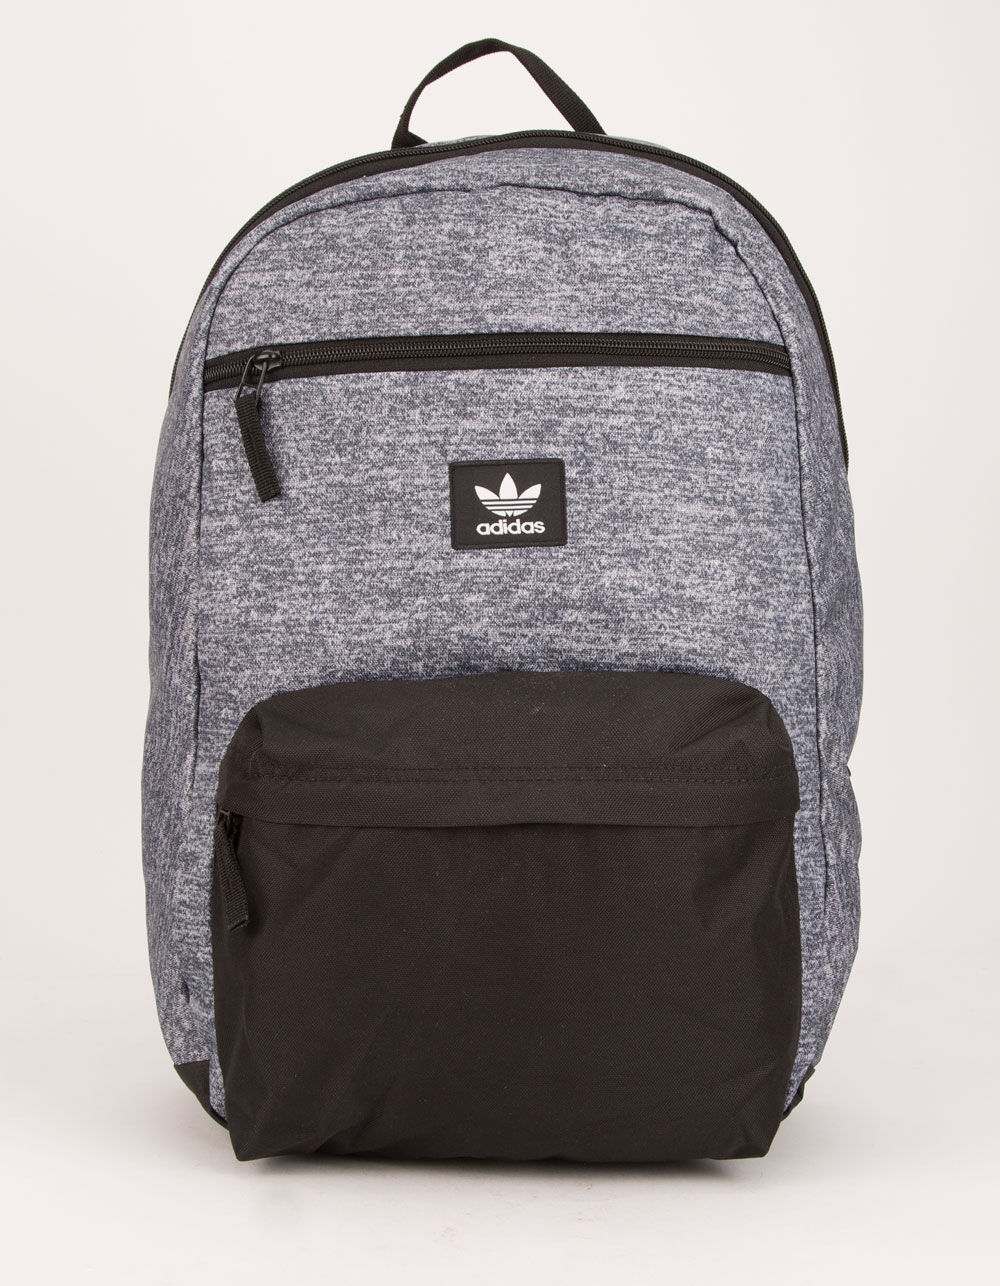 ADIDAS Originals National Black Backpack - BLACK COMBO | Tillys